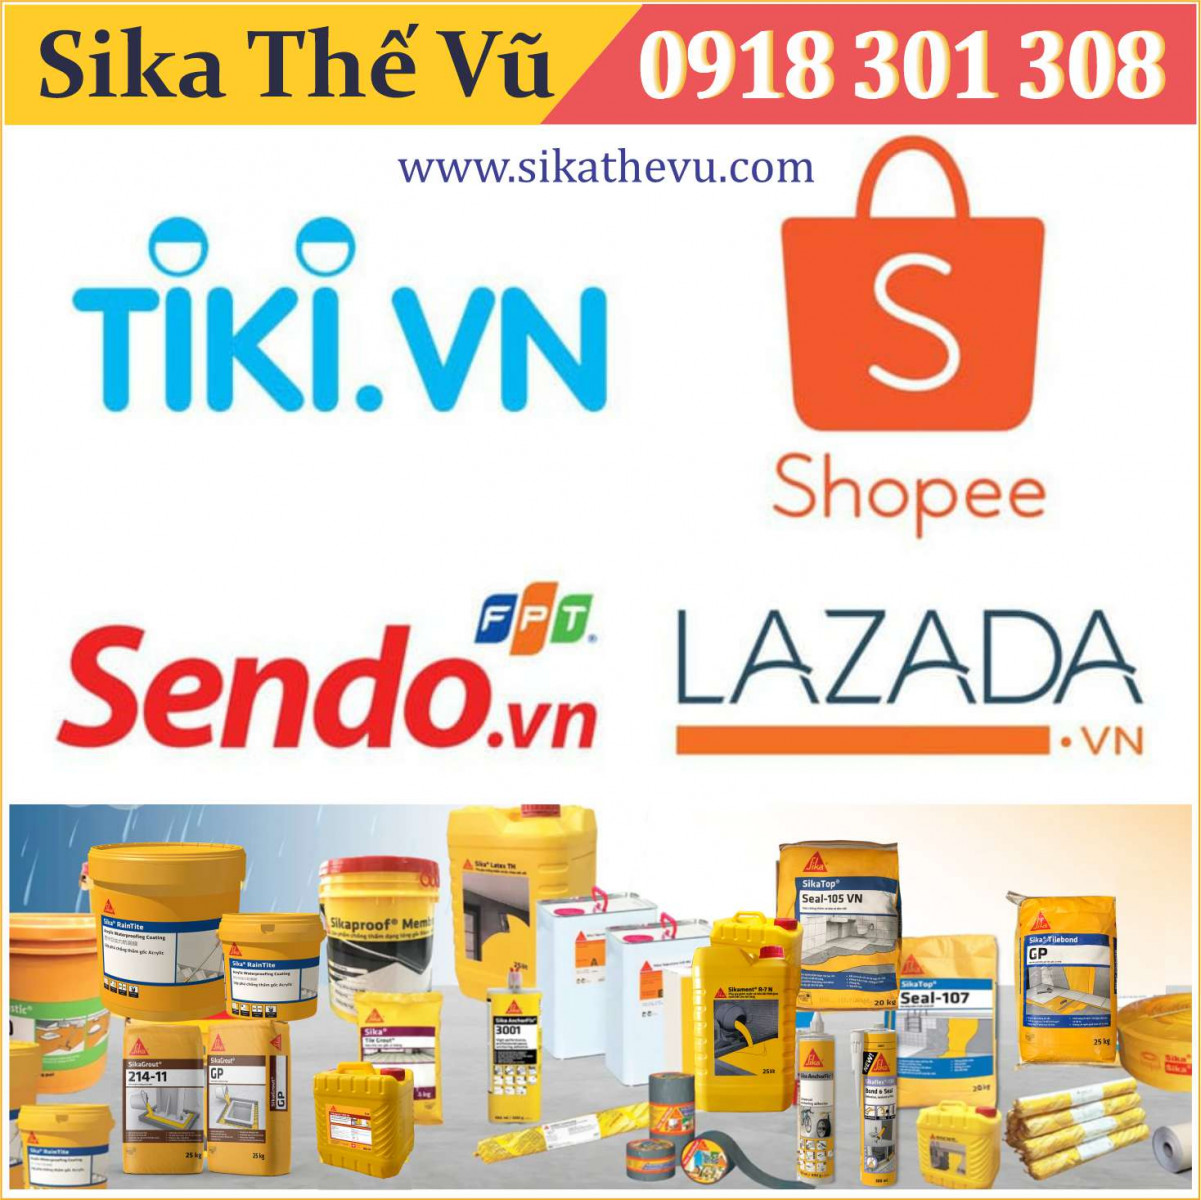 Khai trương GIAN HÀNG “SIKA THẾ VŨ” trên ỨNG DỤNG mua sắm trực tuyến: Shopee, Lazada, Tiki, Sendo